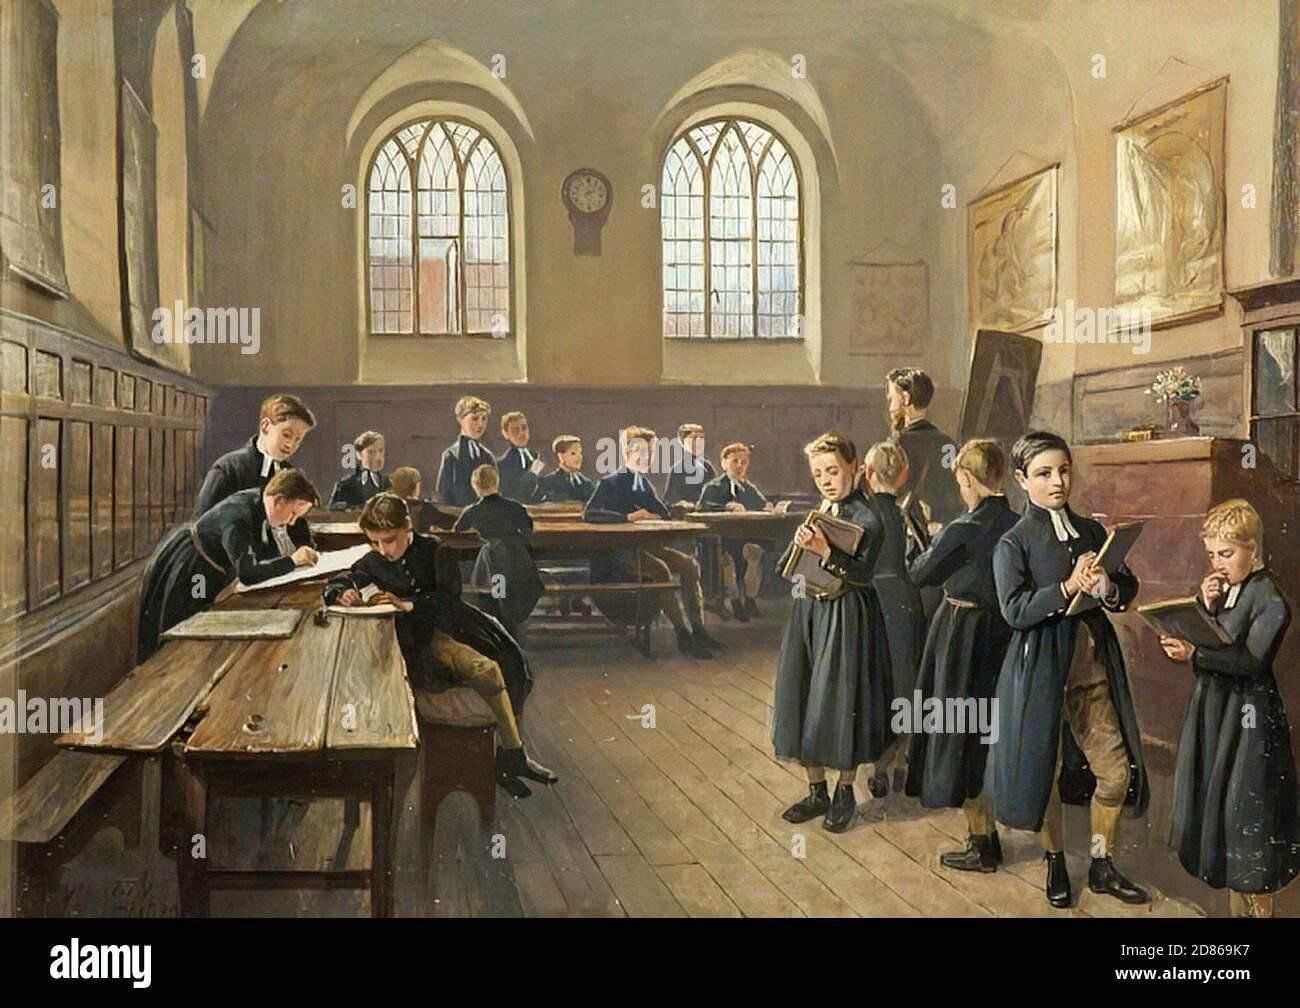 Светская школа 19 век Англия